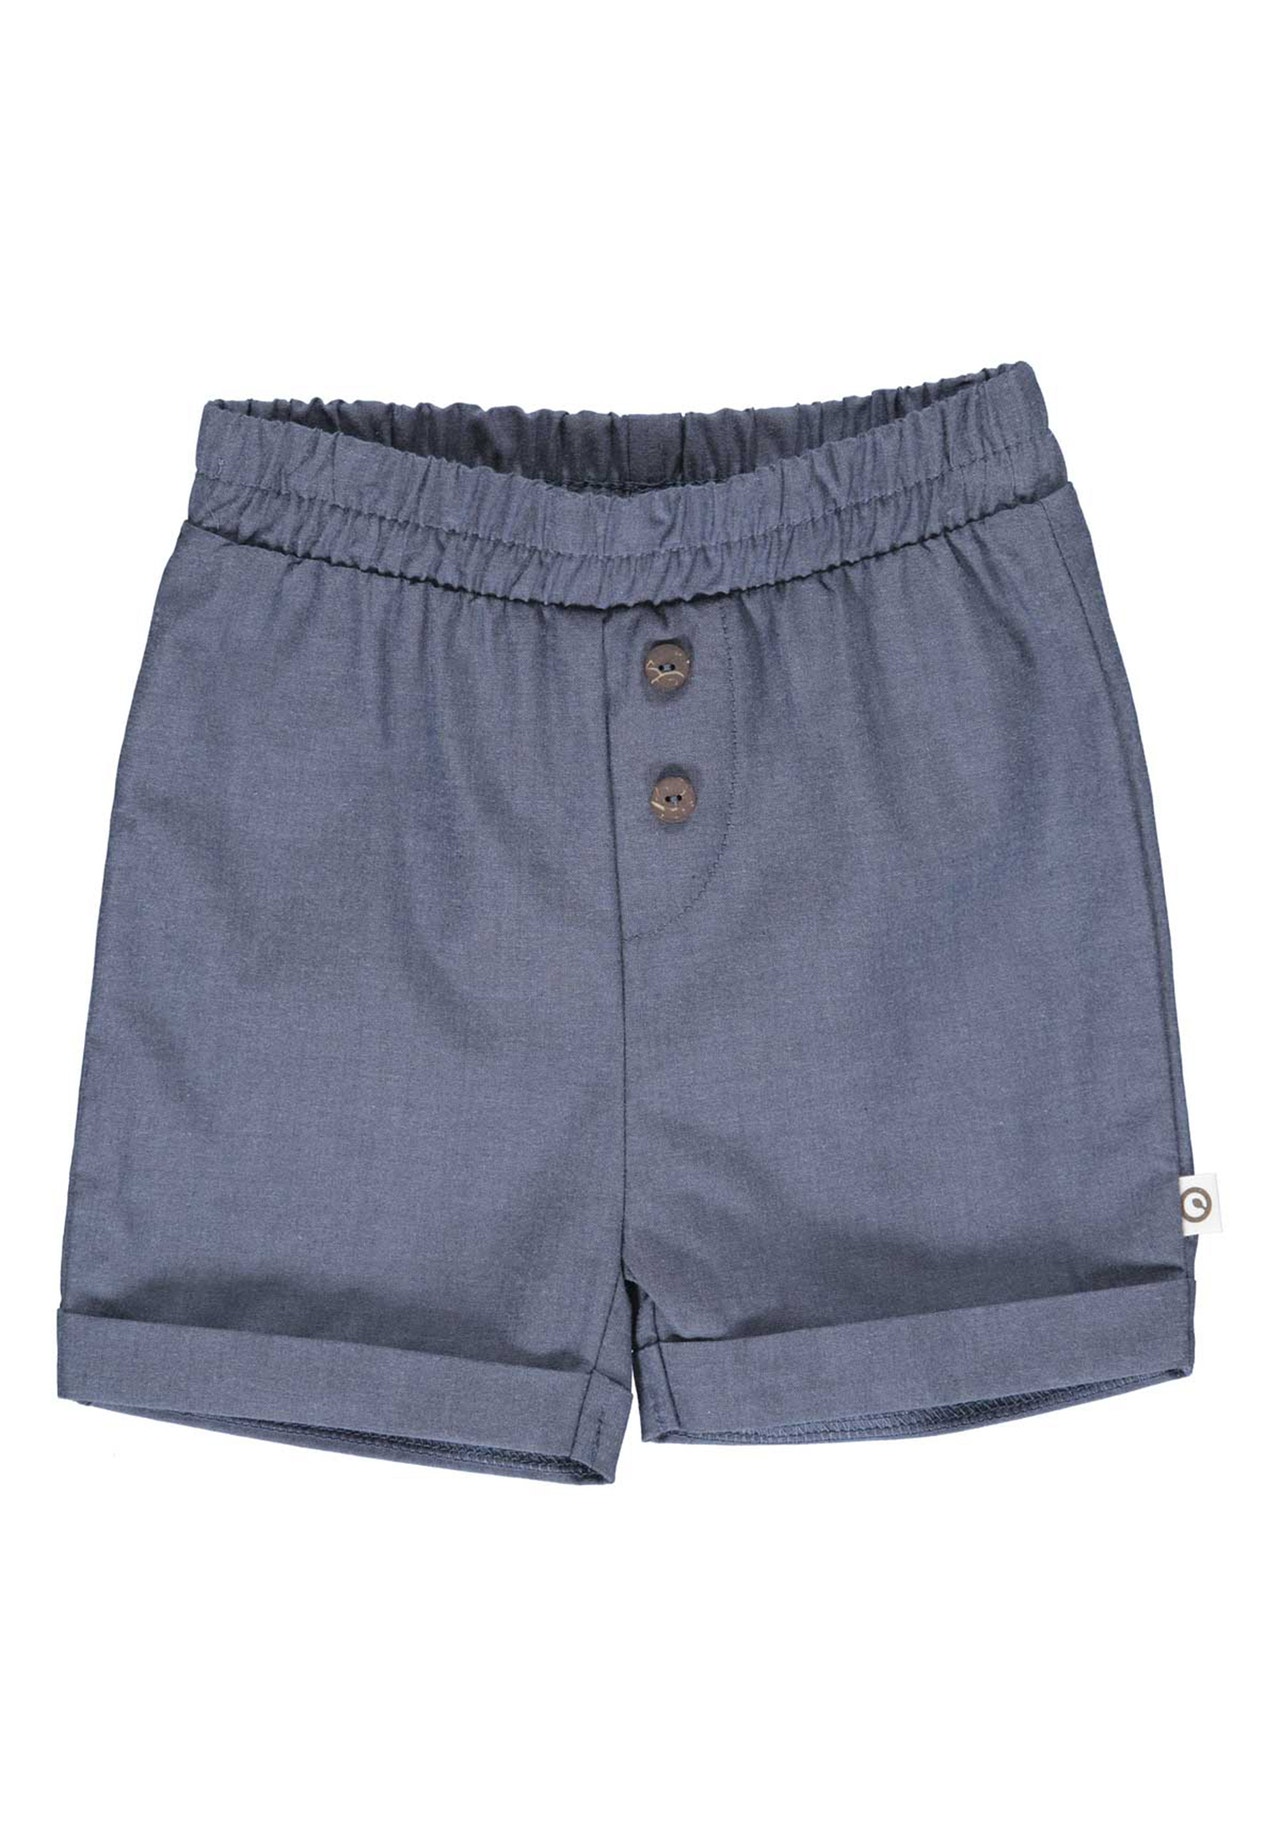 MAMA.LICIOUS müsli Chambray shorts -Chambray - 1532005300